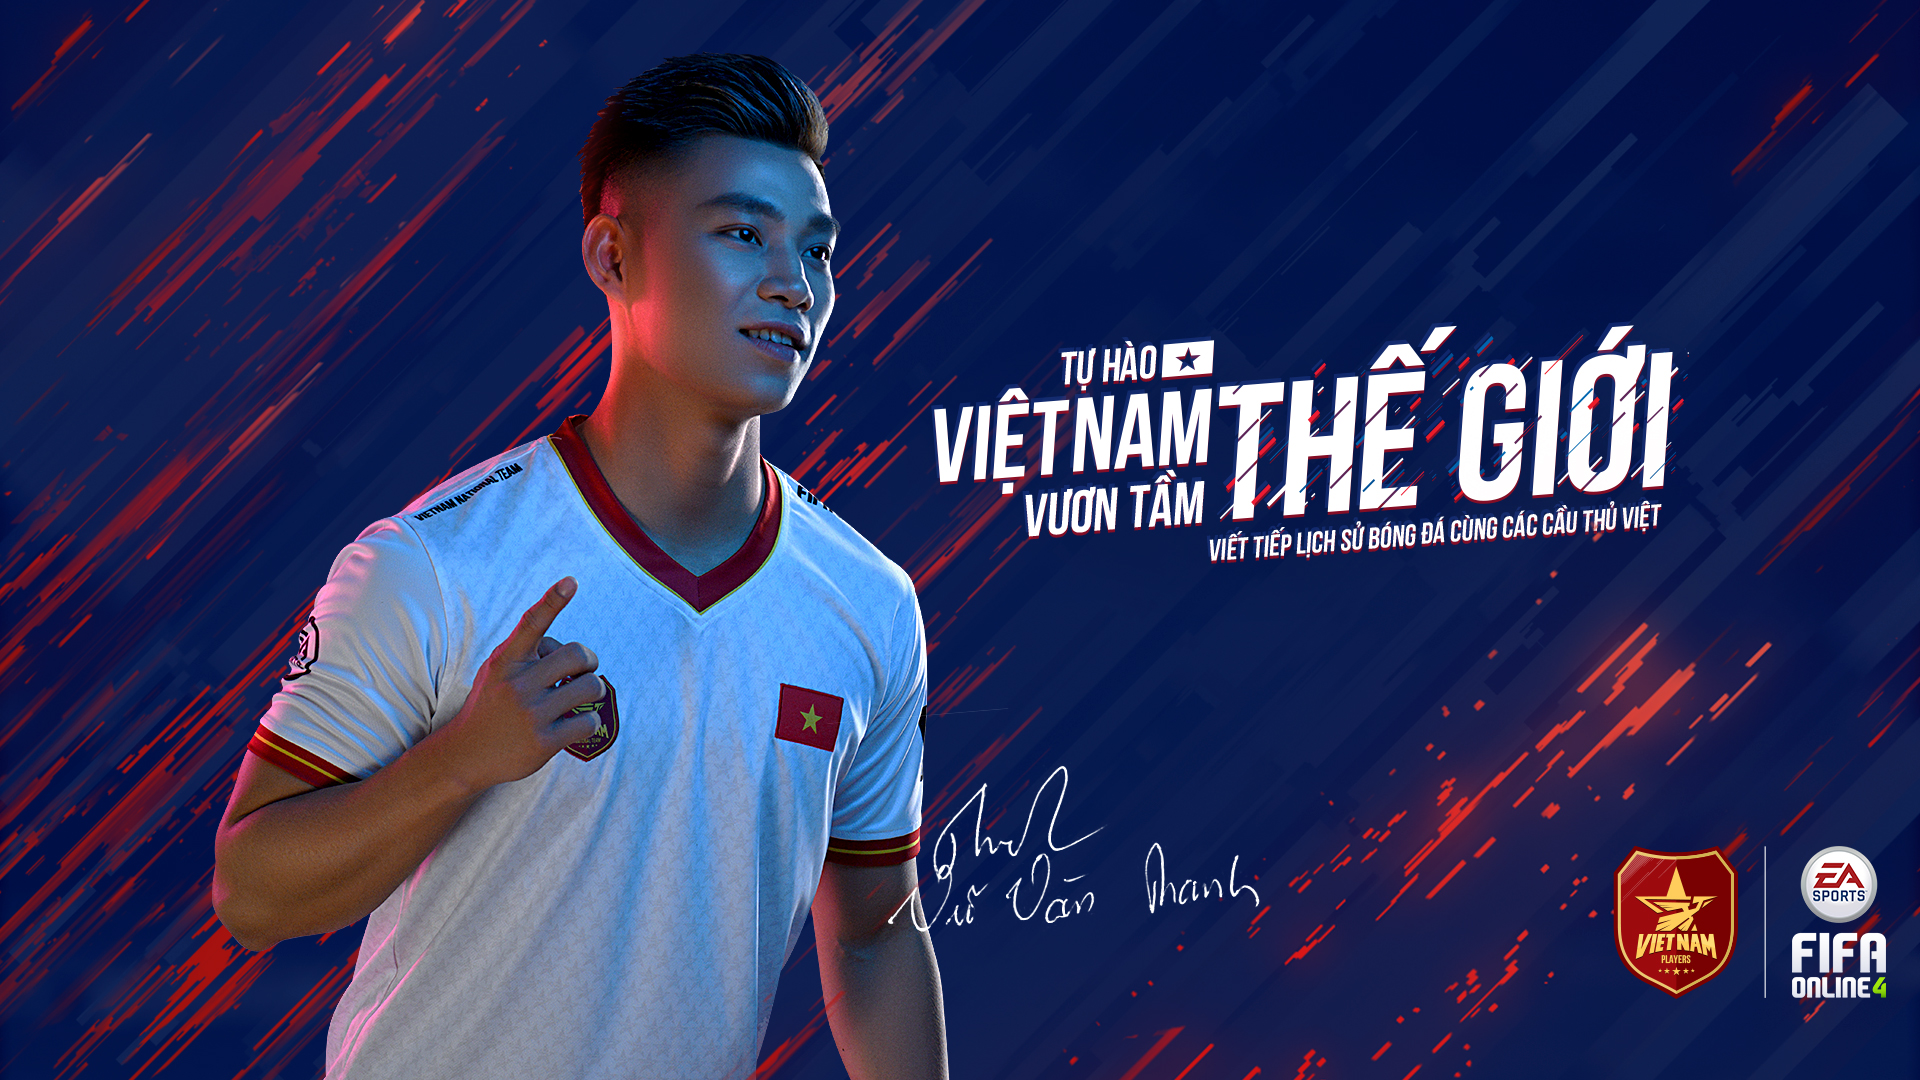 General 1920x1080 Vietnam Vietnam Football Vu Van Thanh footballers